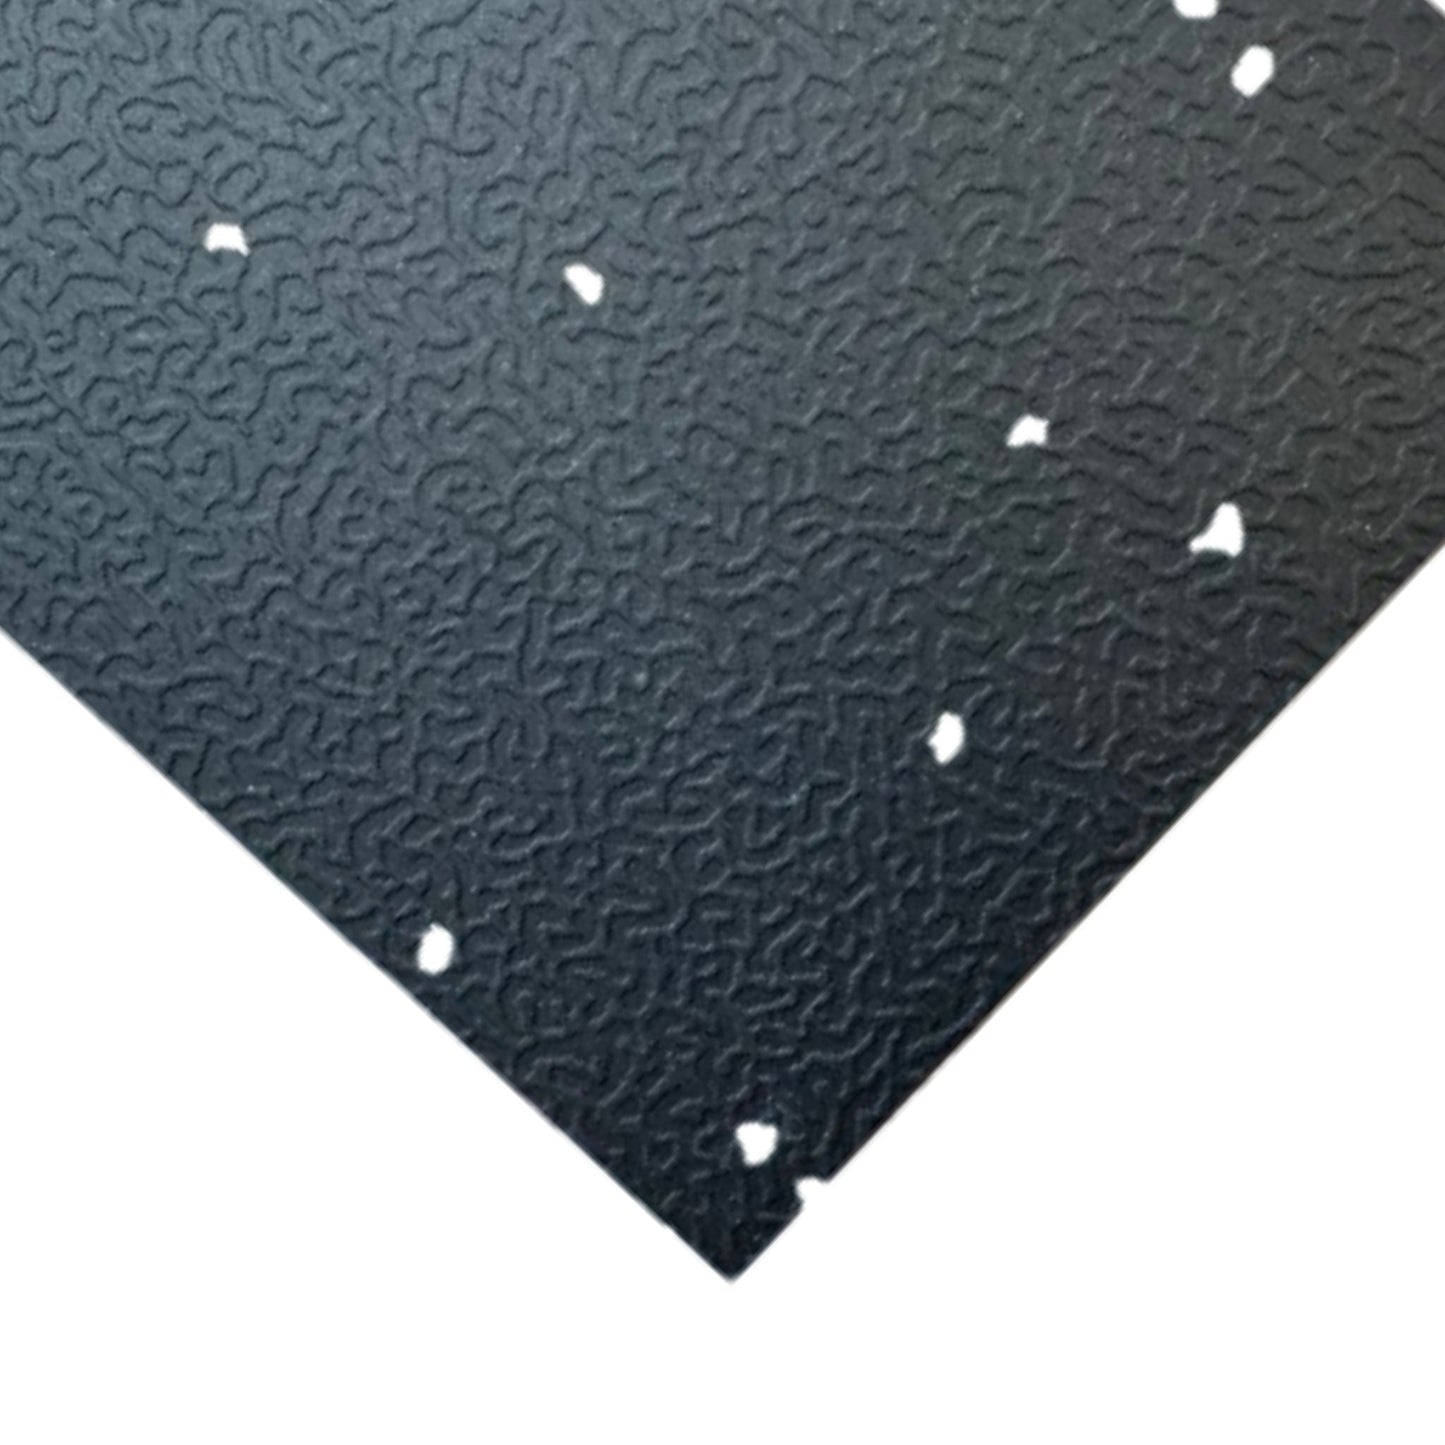 Starfield™ TILES - 37.7" x 37.7" Interlocking Tiles